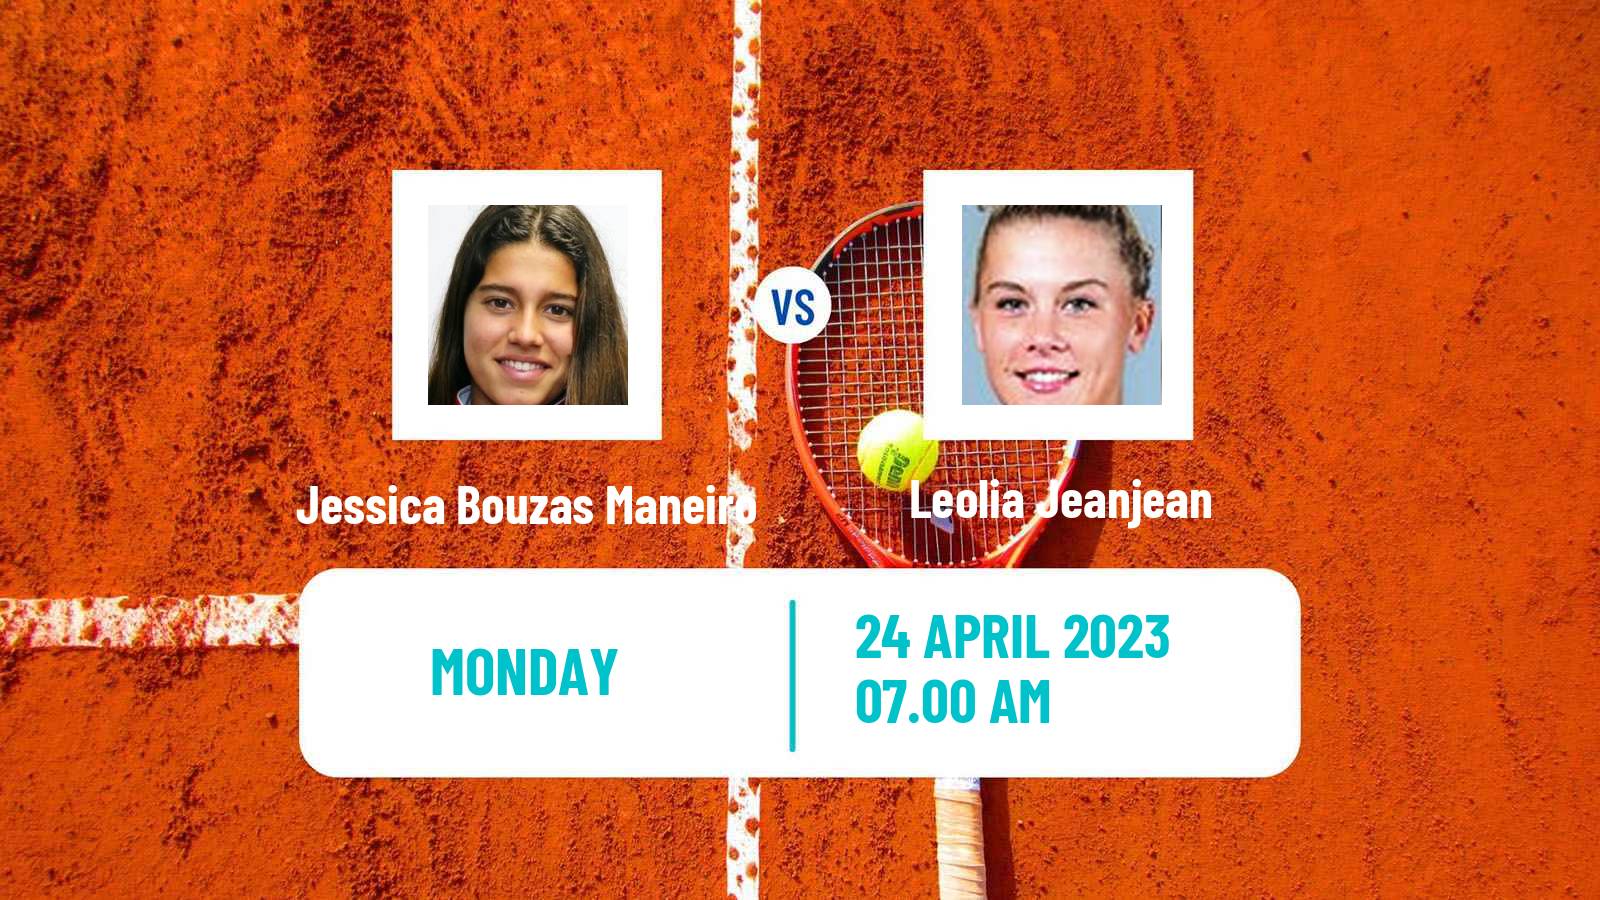 Tennis WTA Madrid Jessica Bouzas Maneiro - Leolia Jeanjean